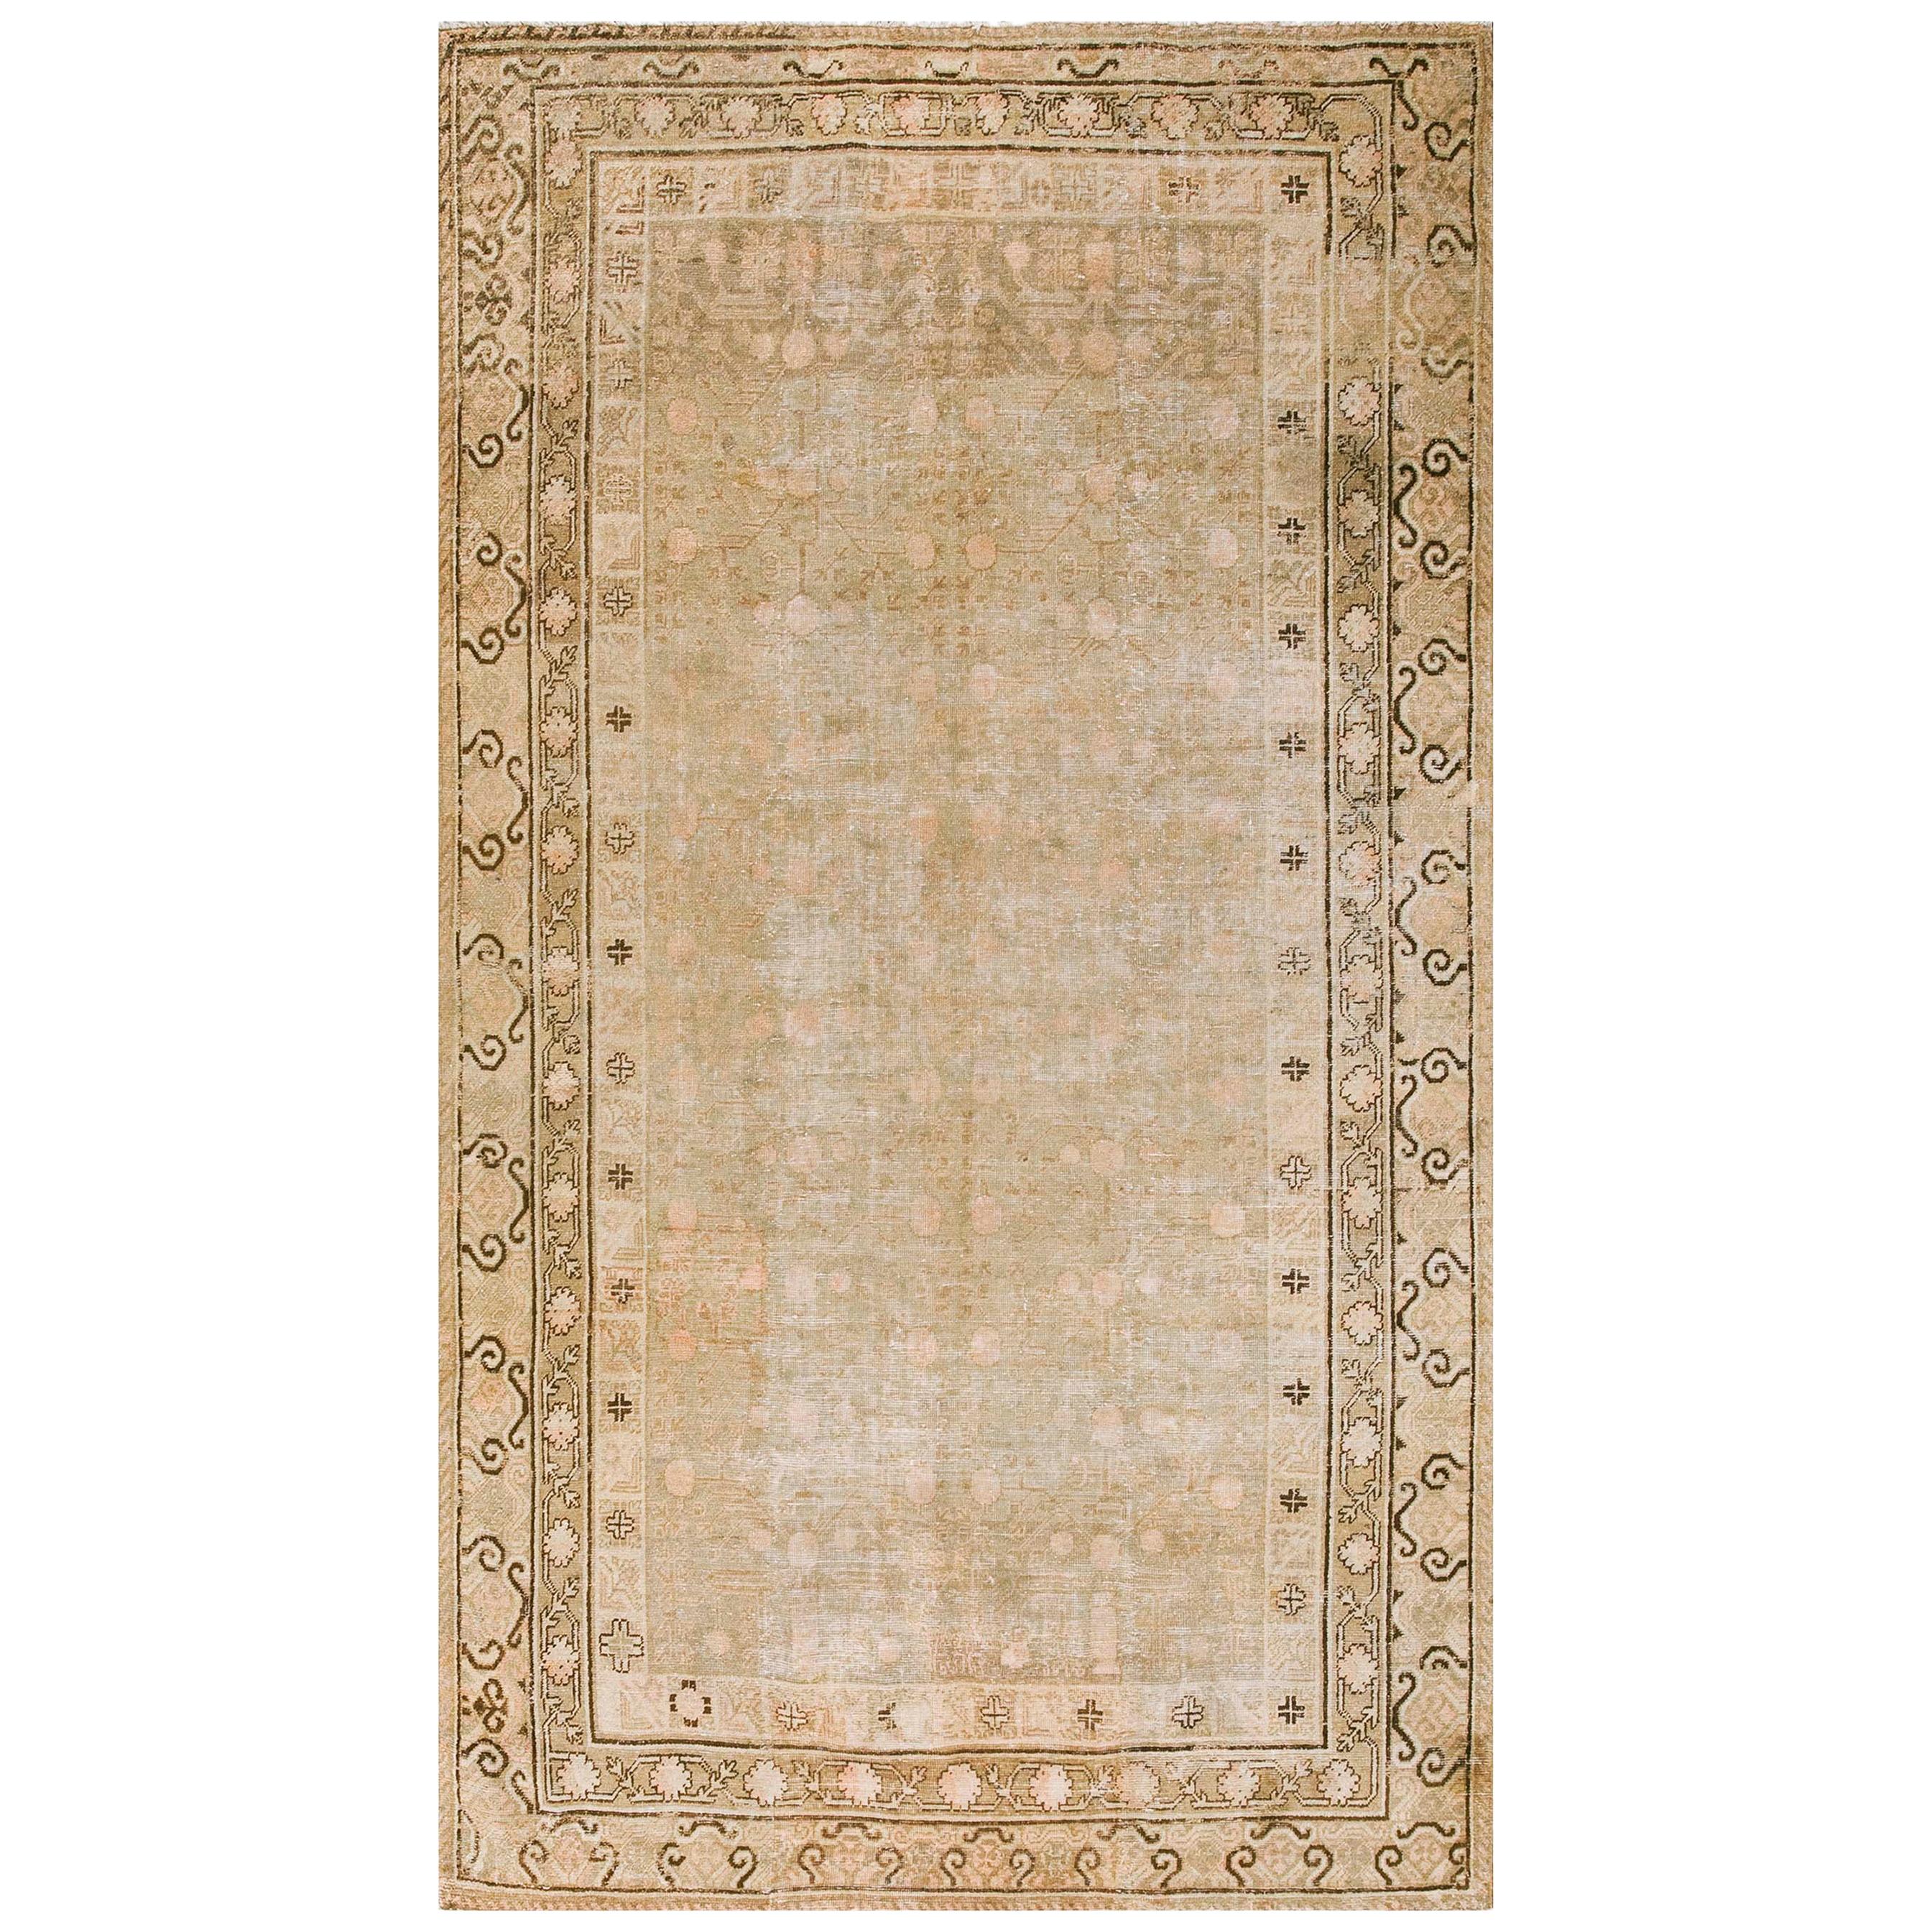 Zentralasiatischer chinesischer Khotan-Teppich des frühen 20. Jahrhunderts (6''6x11''10 - 198x360)